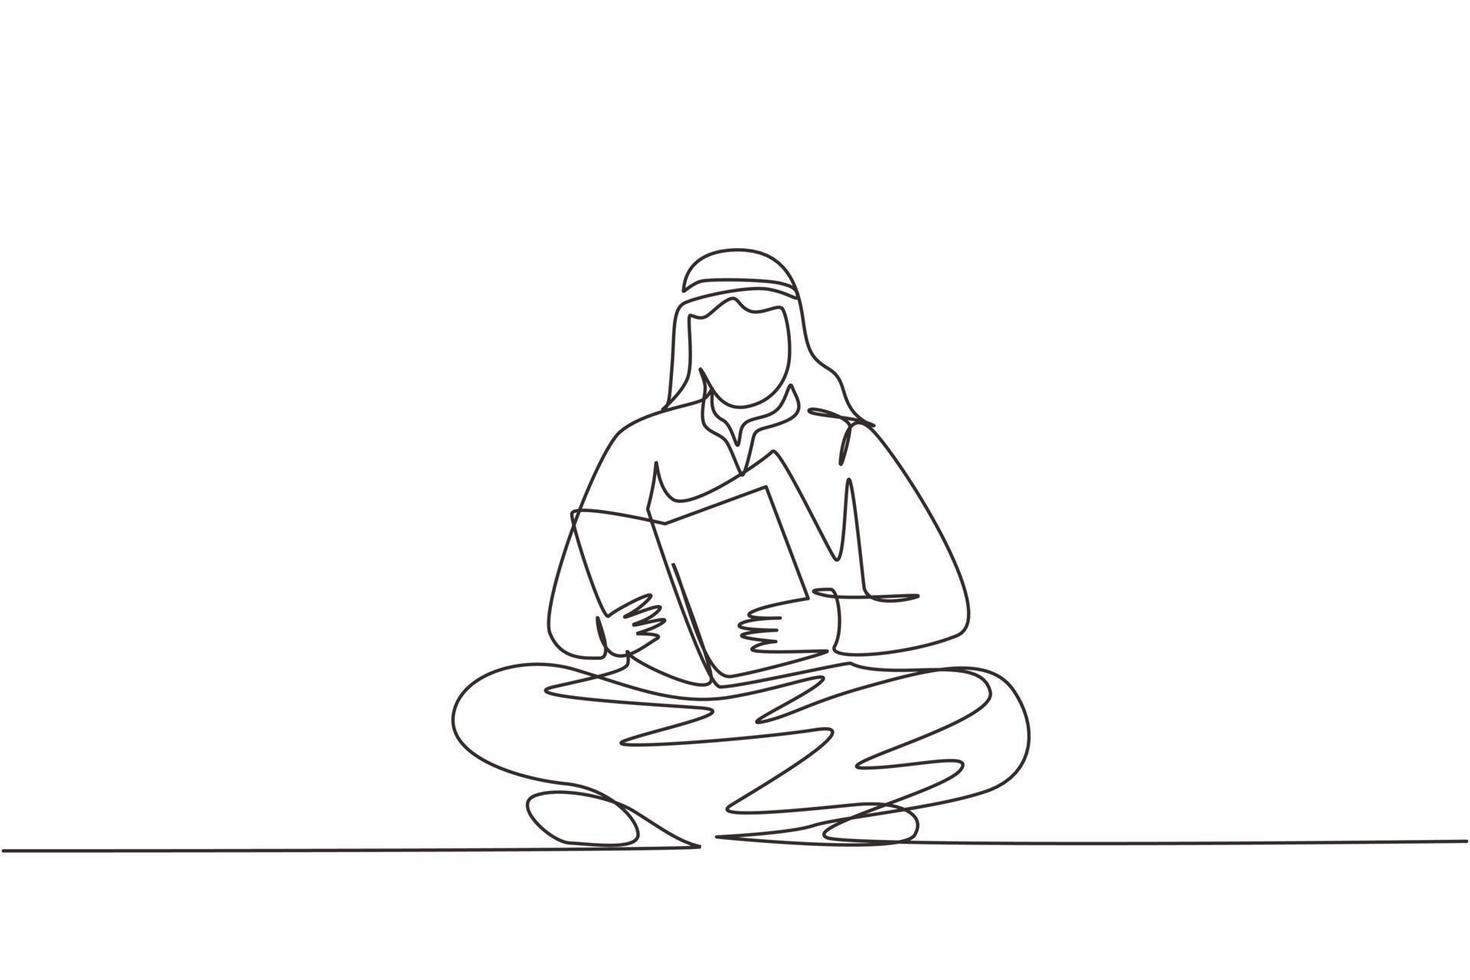 fortlaufende einzeilige zeichnung arabischer mann sitzt auf dem boden und liest ein buch. student bereitet sich auf die prüfung vor, bewerber bereitet sich auf die zulassung vor, buchliebhaber liest. einzeiliger Entwurfsvektor vektor